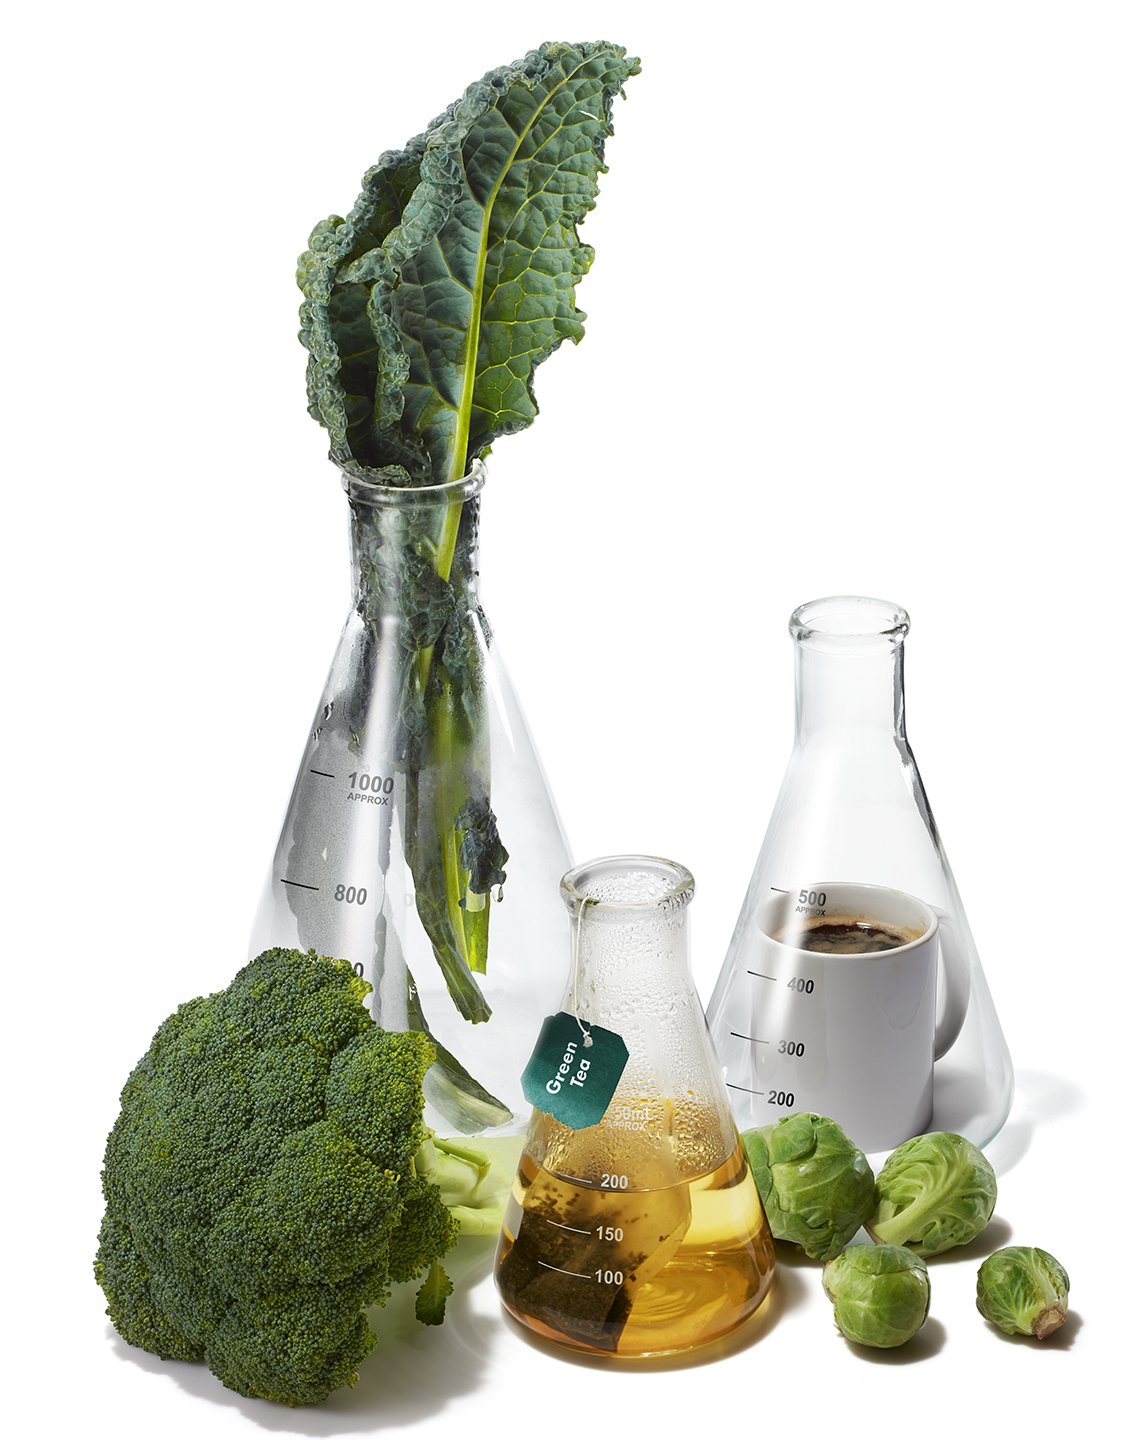 Col rizada, coles de Bruselas, brócoli, té verde y café dentro y alrededor de vasos y matraces científicos para simbolizar la investigación contra el cáncer